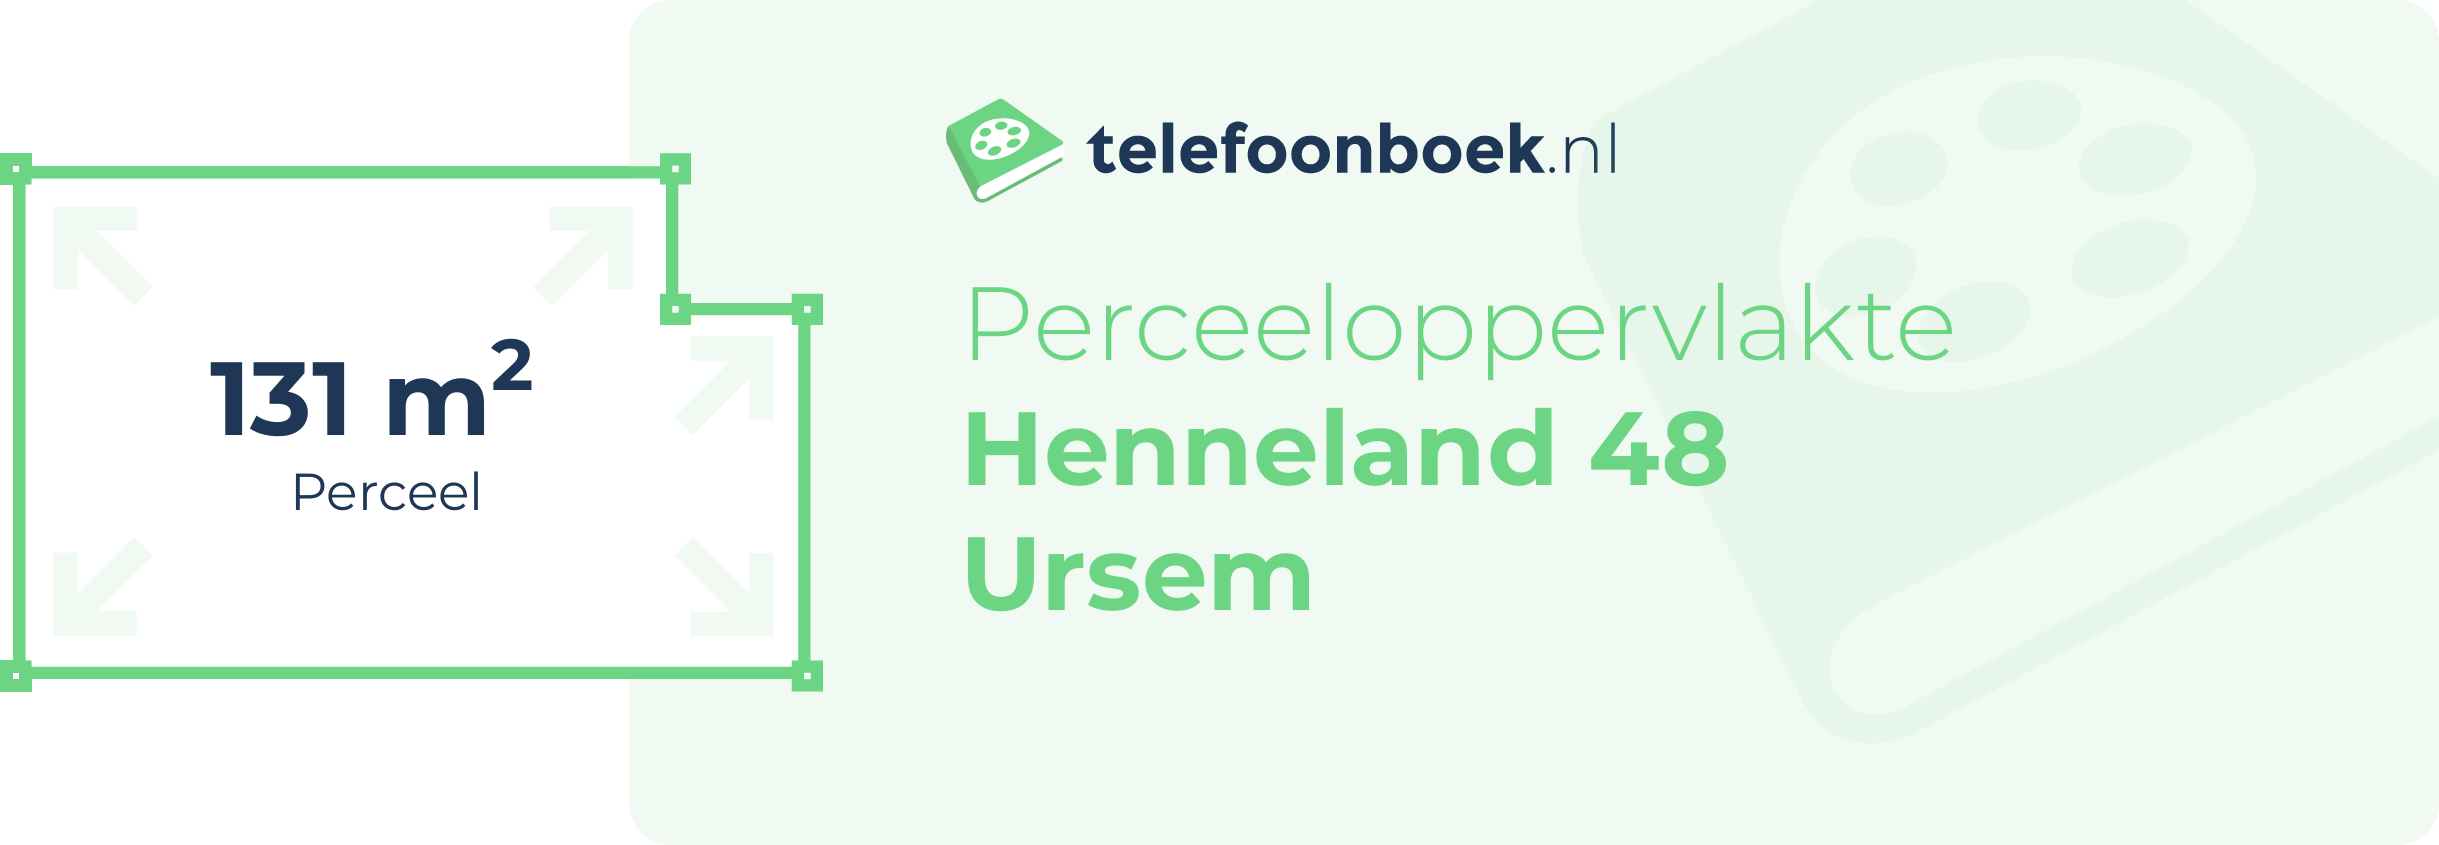 Perceeloppervlakte Henneland 48 Ursem